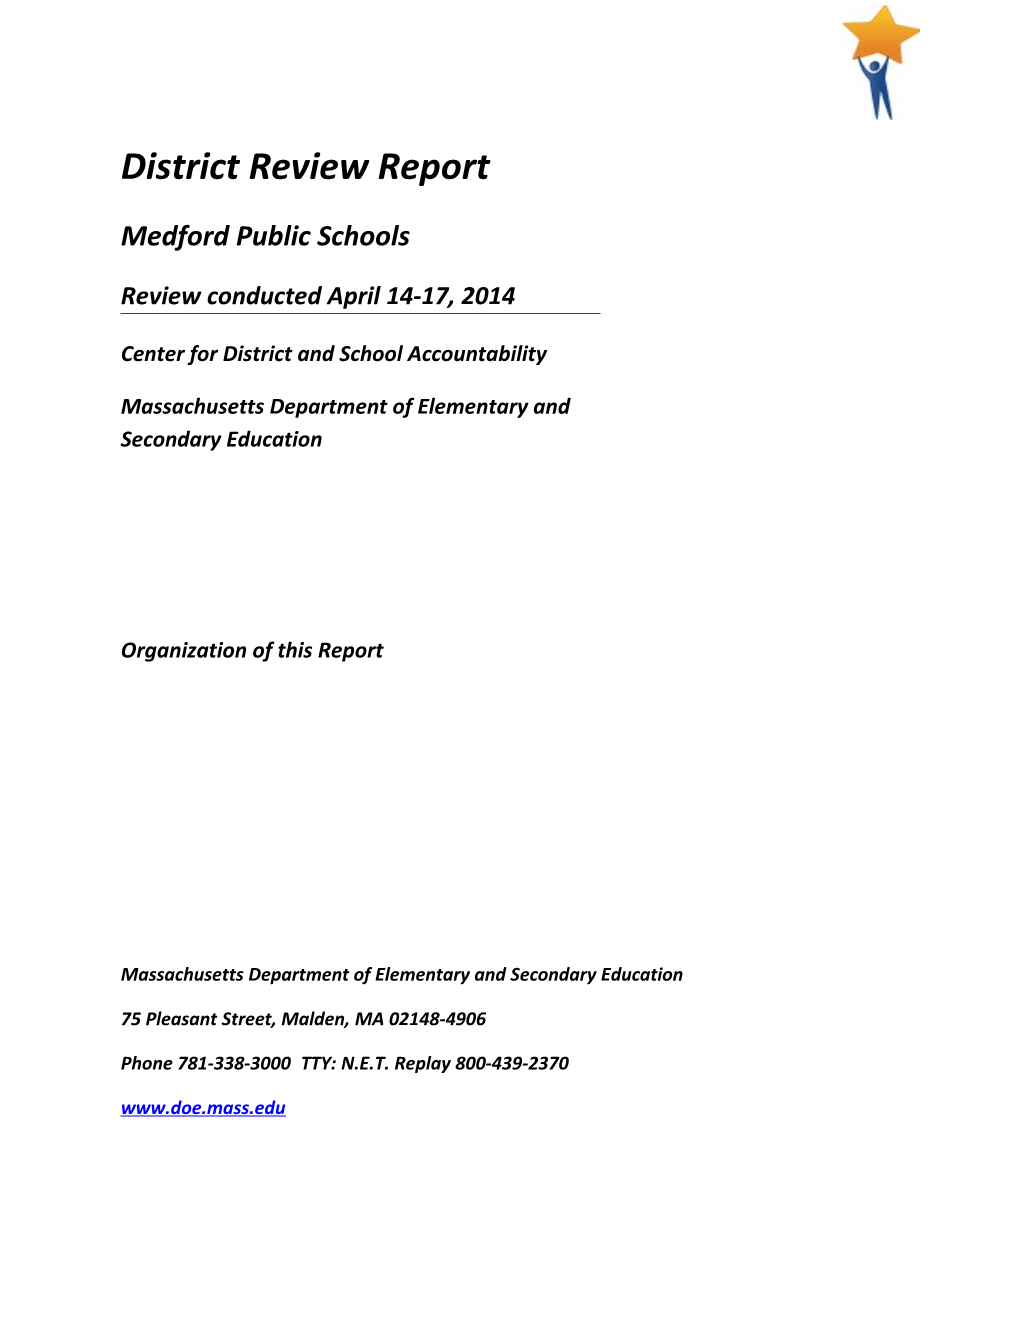 2014 Medford Public Schools District Review Report